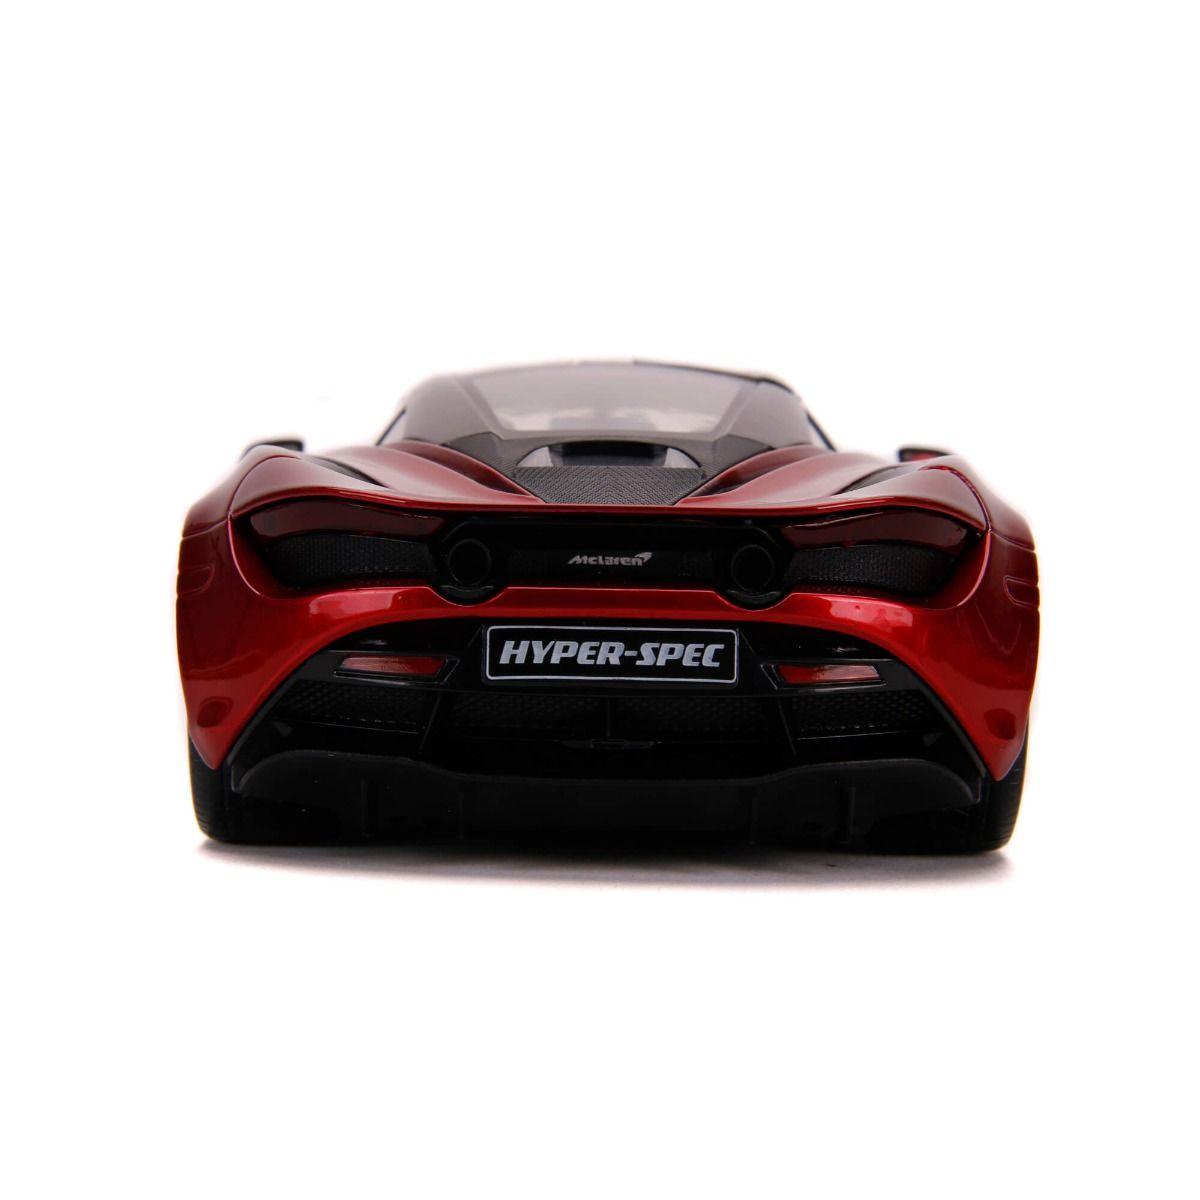 JAD32275 HyperSpec - McLaren 720S Red 1:24 Scale Diecast Vehicle - Jada Toys - Titan Pop Culture